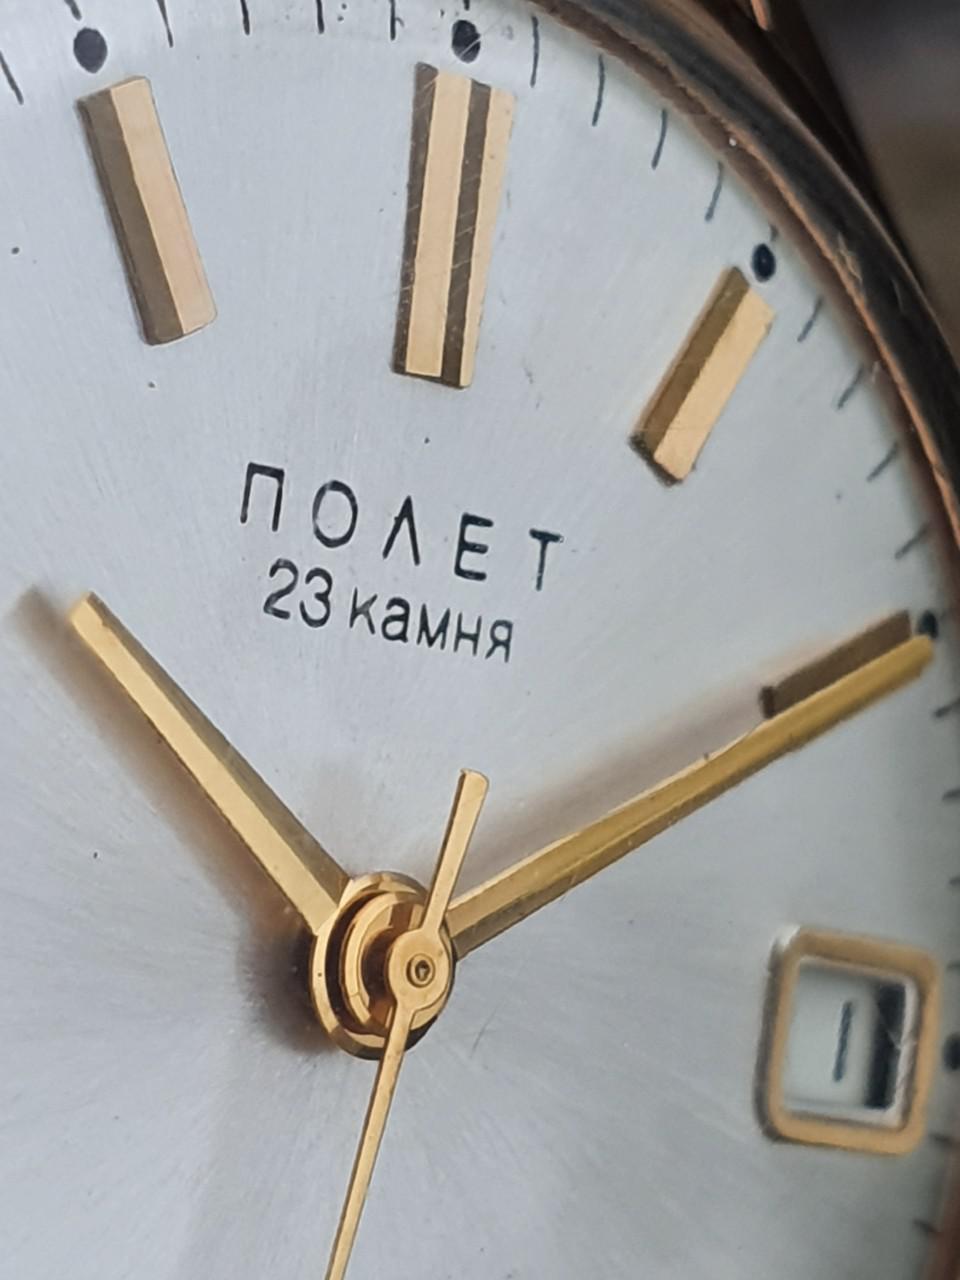 Đồng hồ Poljot 23 jewels vàng đúc nguyên khối 583 - Đồng hồ Liên Xô